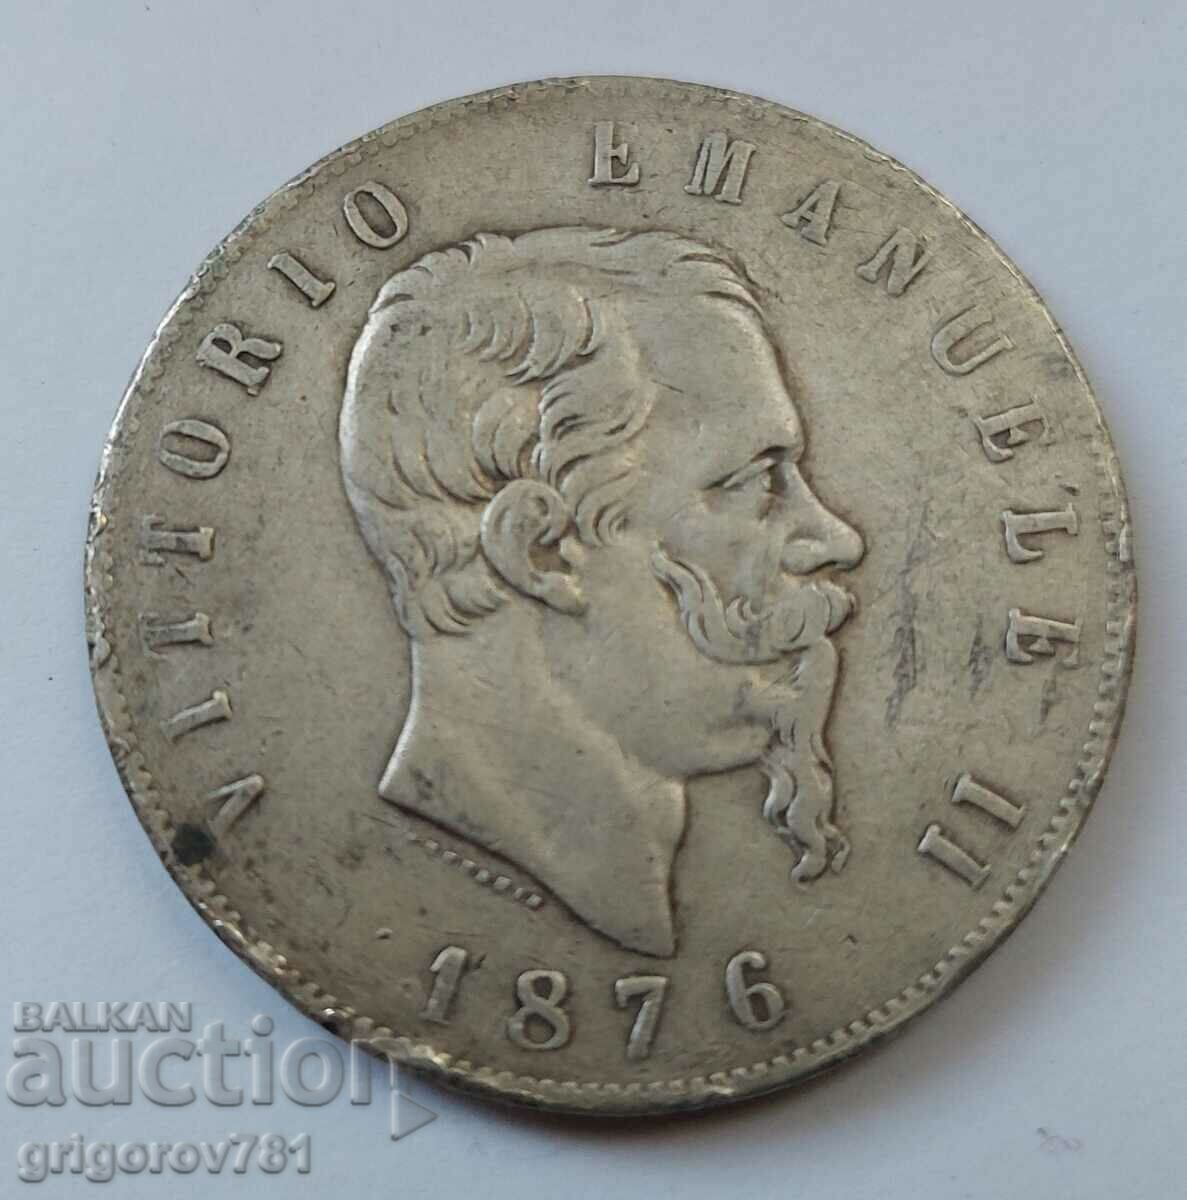 Ασημένιο 5 λίρες Ιταλία 1876 R - ασημένιο νόμισμα